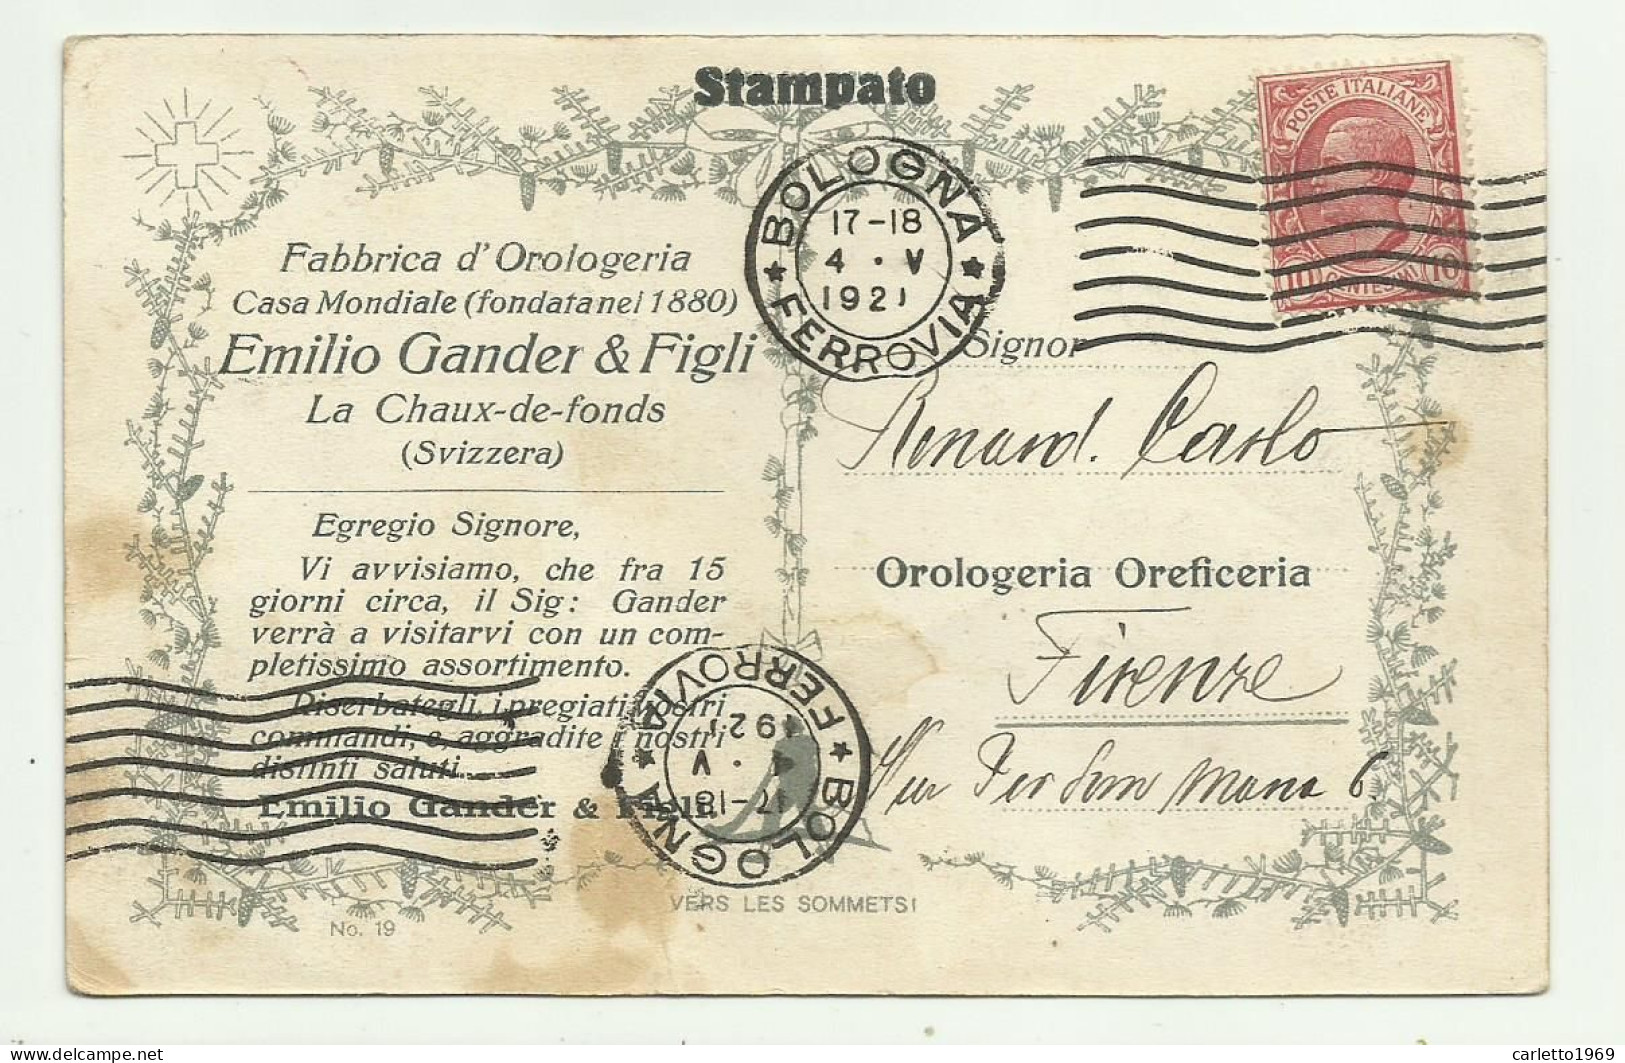 CARTOLINA FABBRICA D'OROLOGERIA EMILIO GANDER & FIGLI - LA CHAUX DE FONDS SVIZZERA 1921 VIAGGIATA FP - Advertising